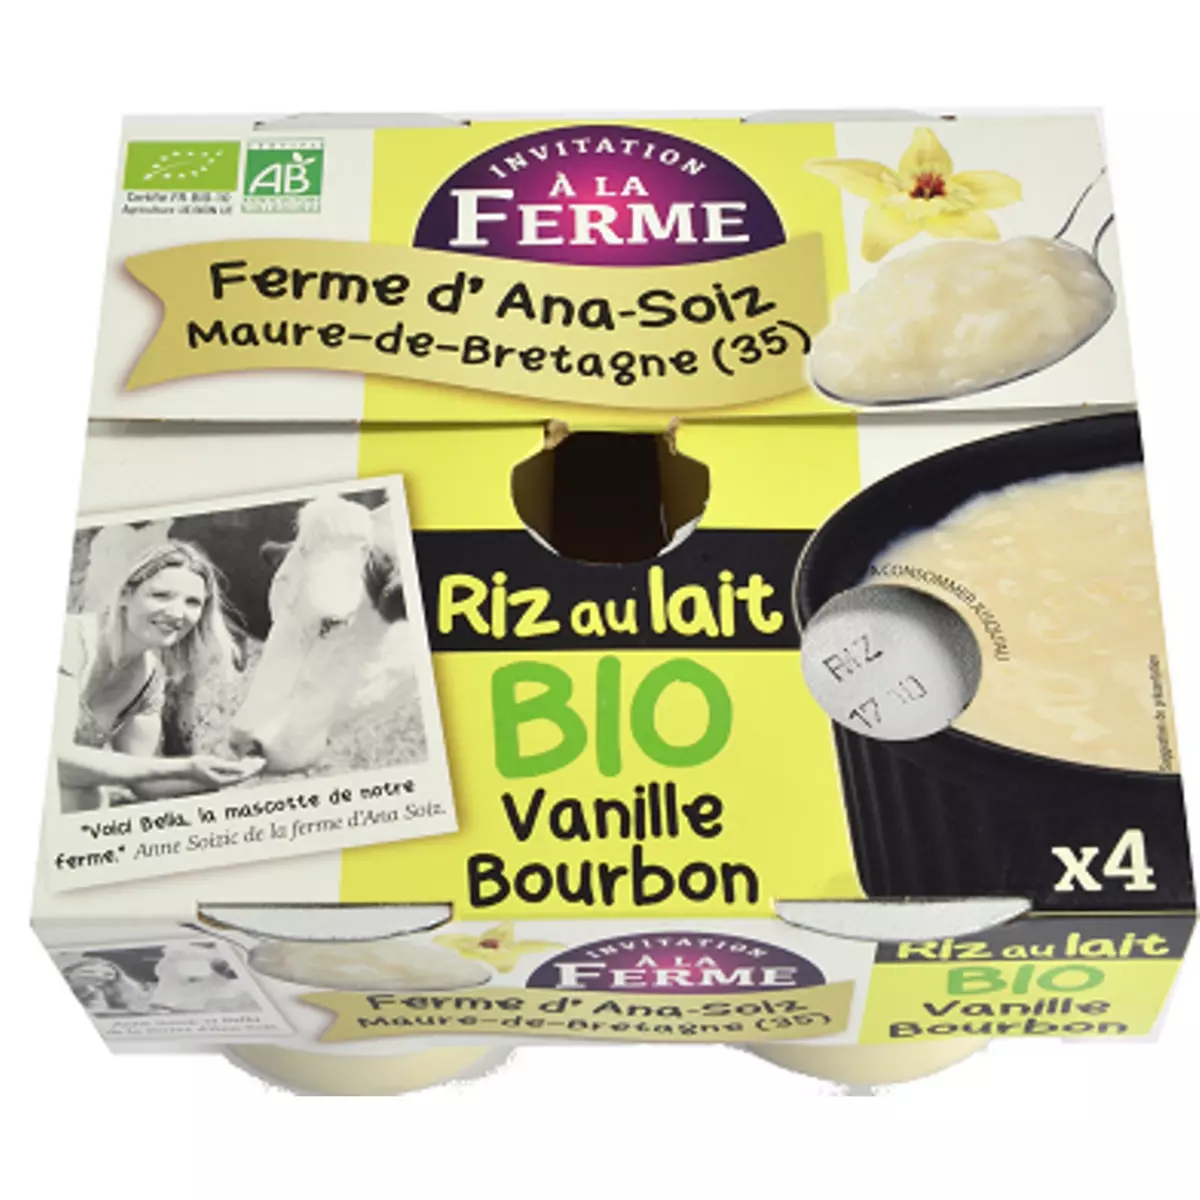 INVITATION A LA FERME Riz au lait à la vanille bourbon bio 4x125g